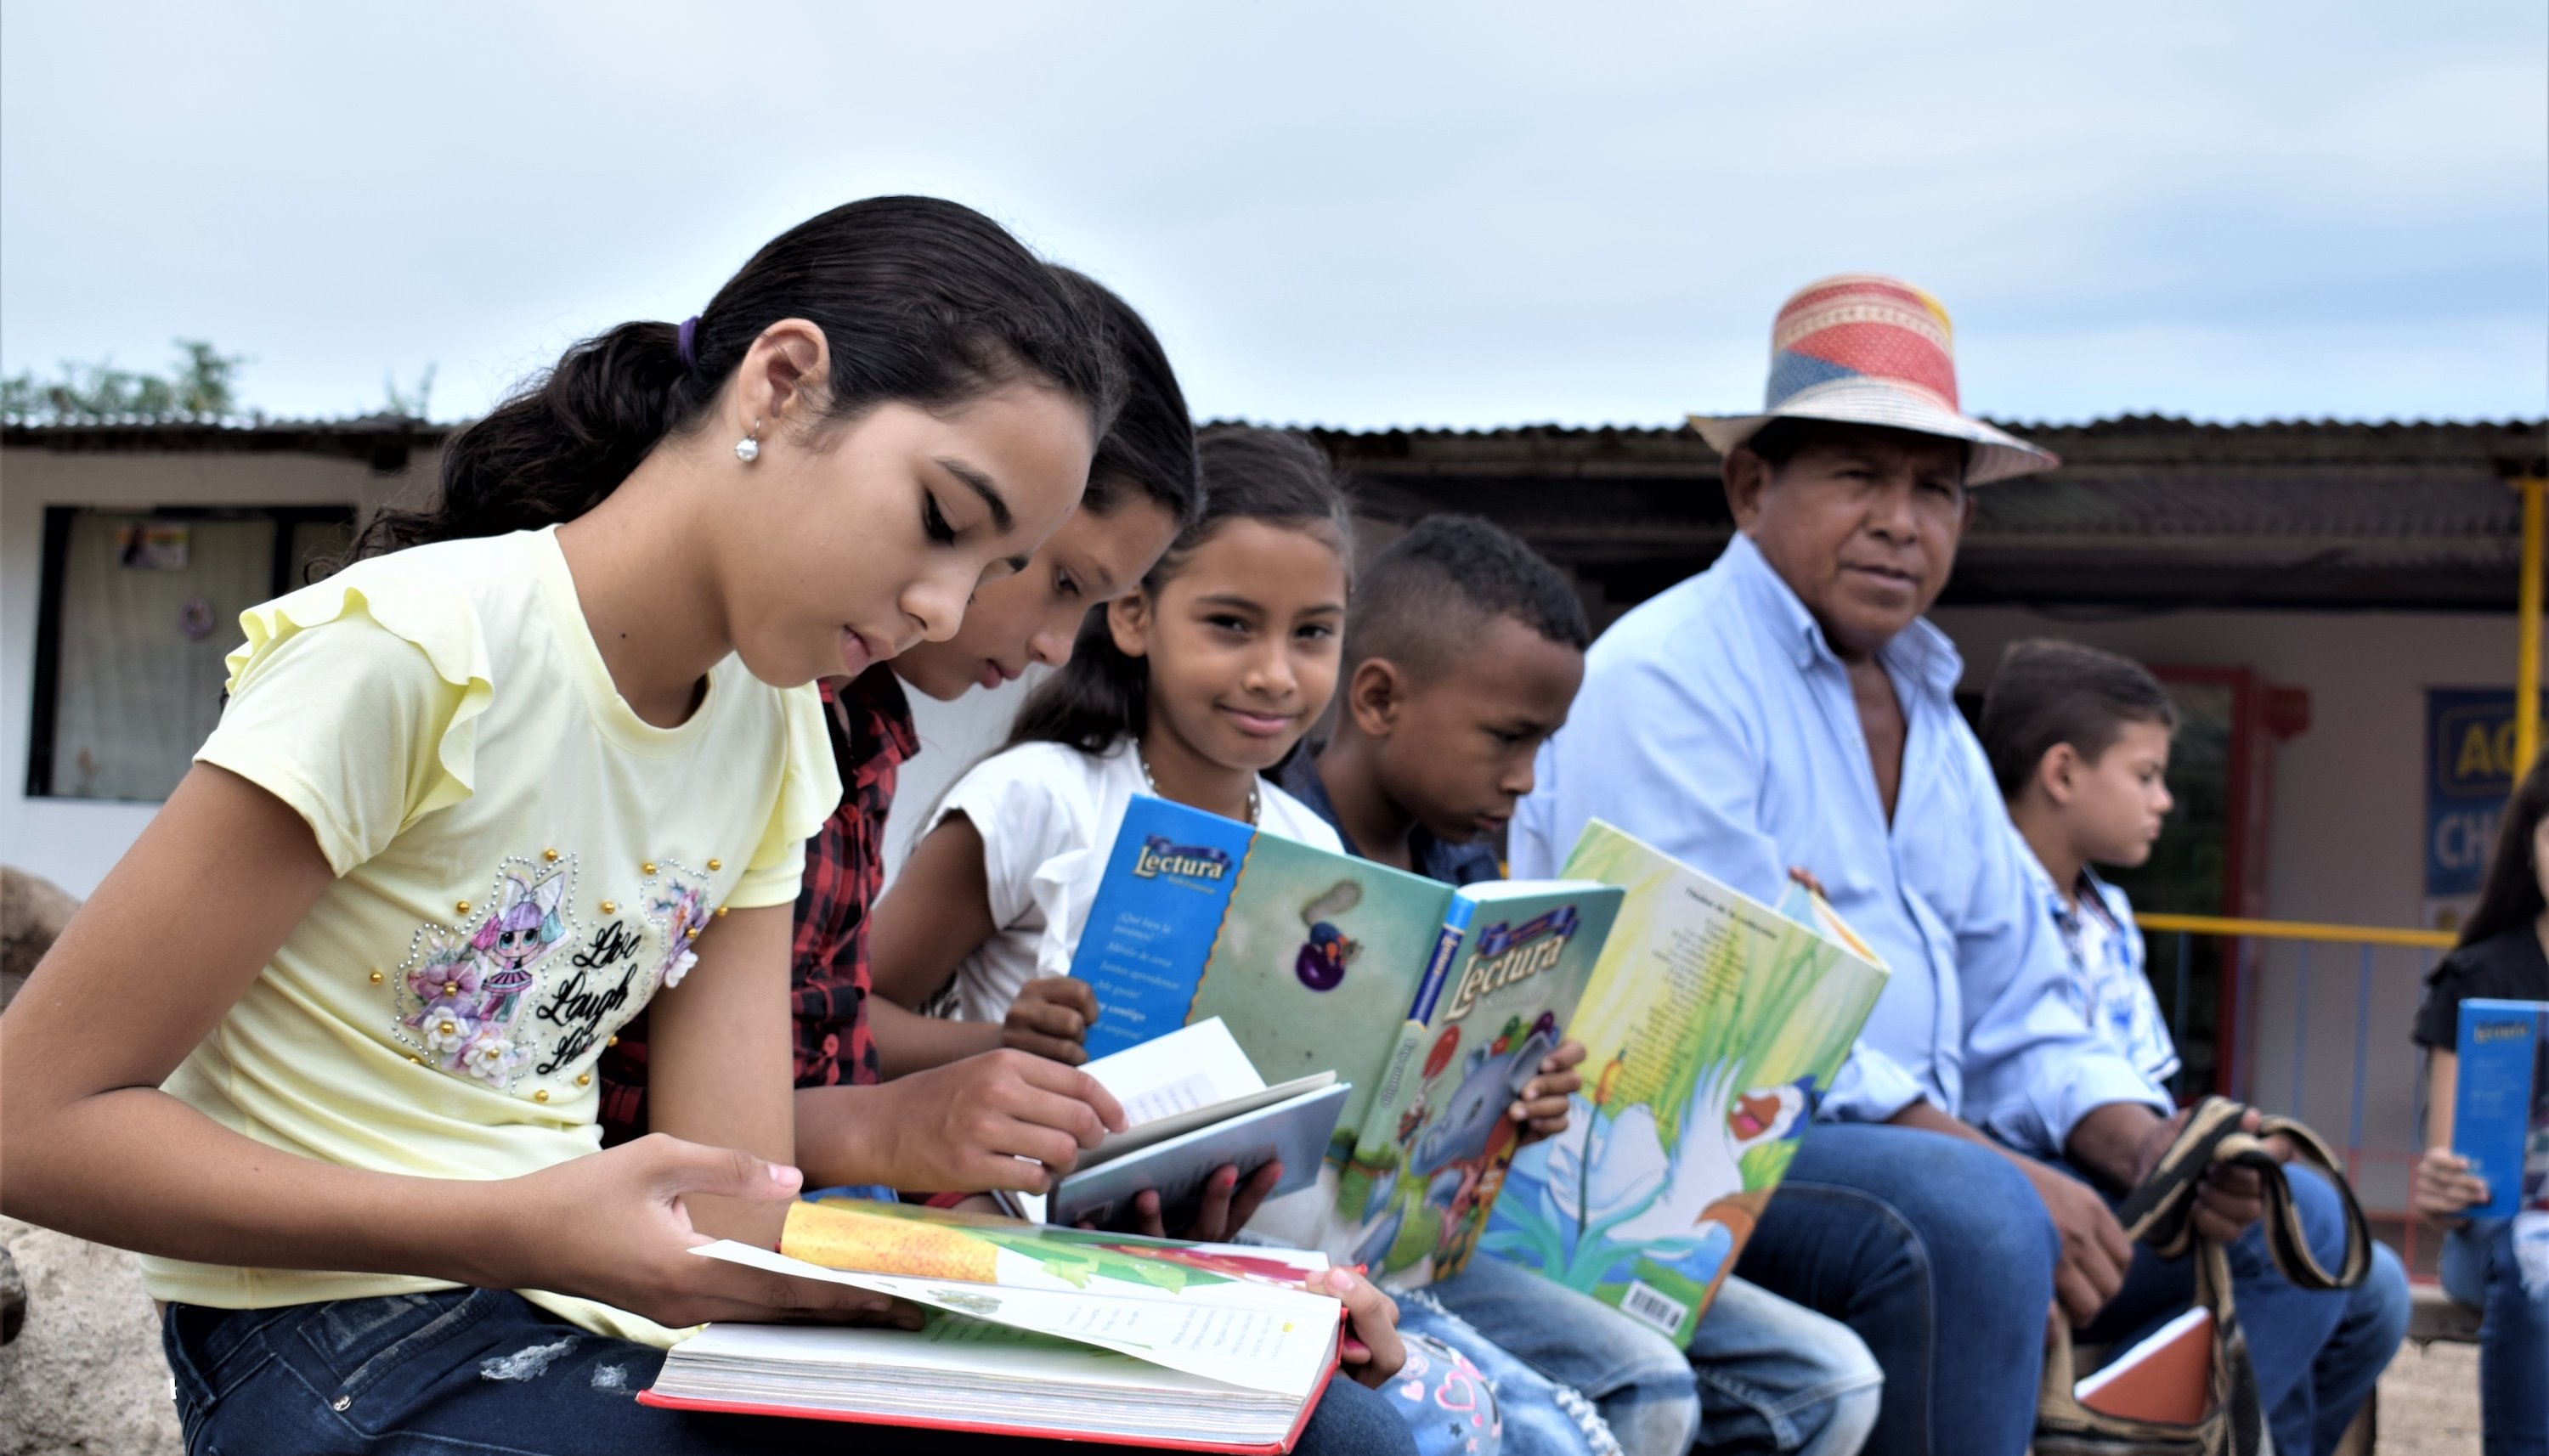 Read Los niños de Pondores quieren su propia biblioteca de la paz by Misión de Verificación de la ONU en Colombia